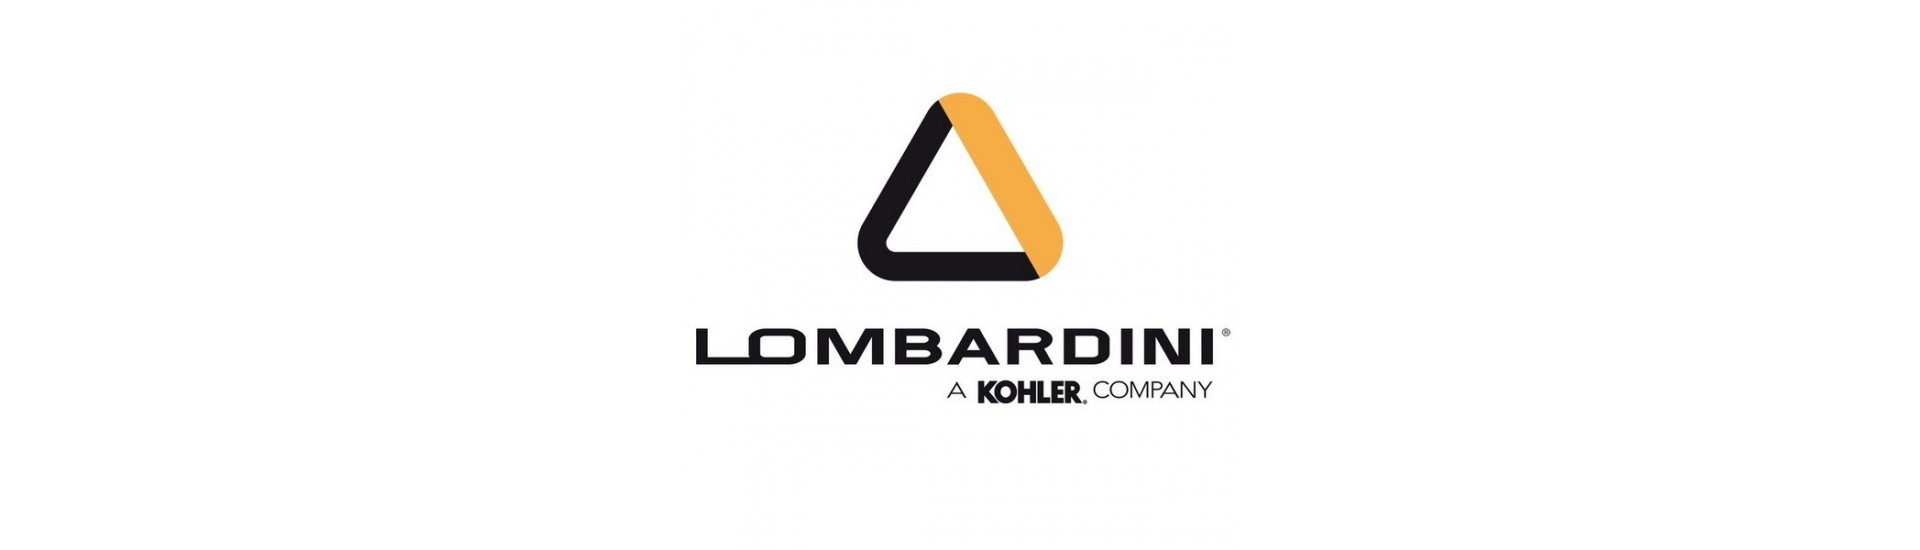 Moottoriosat Lombardini au meilleur prix pour voiture sans permis